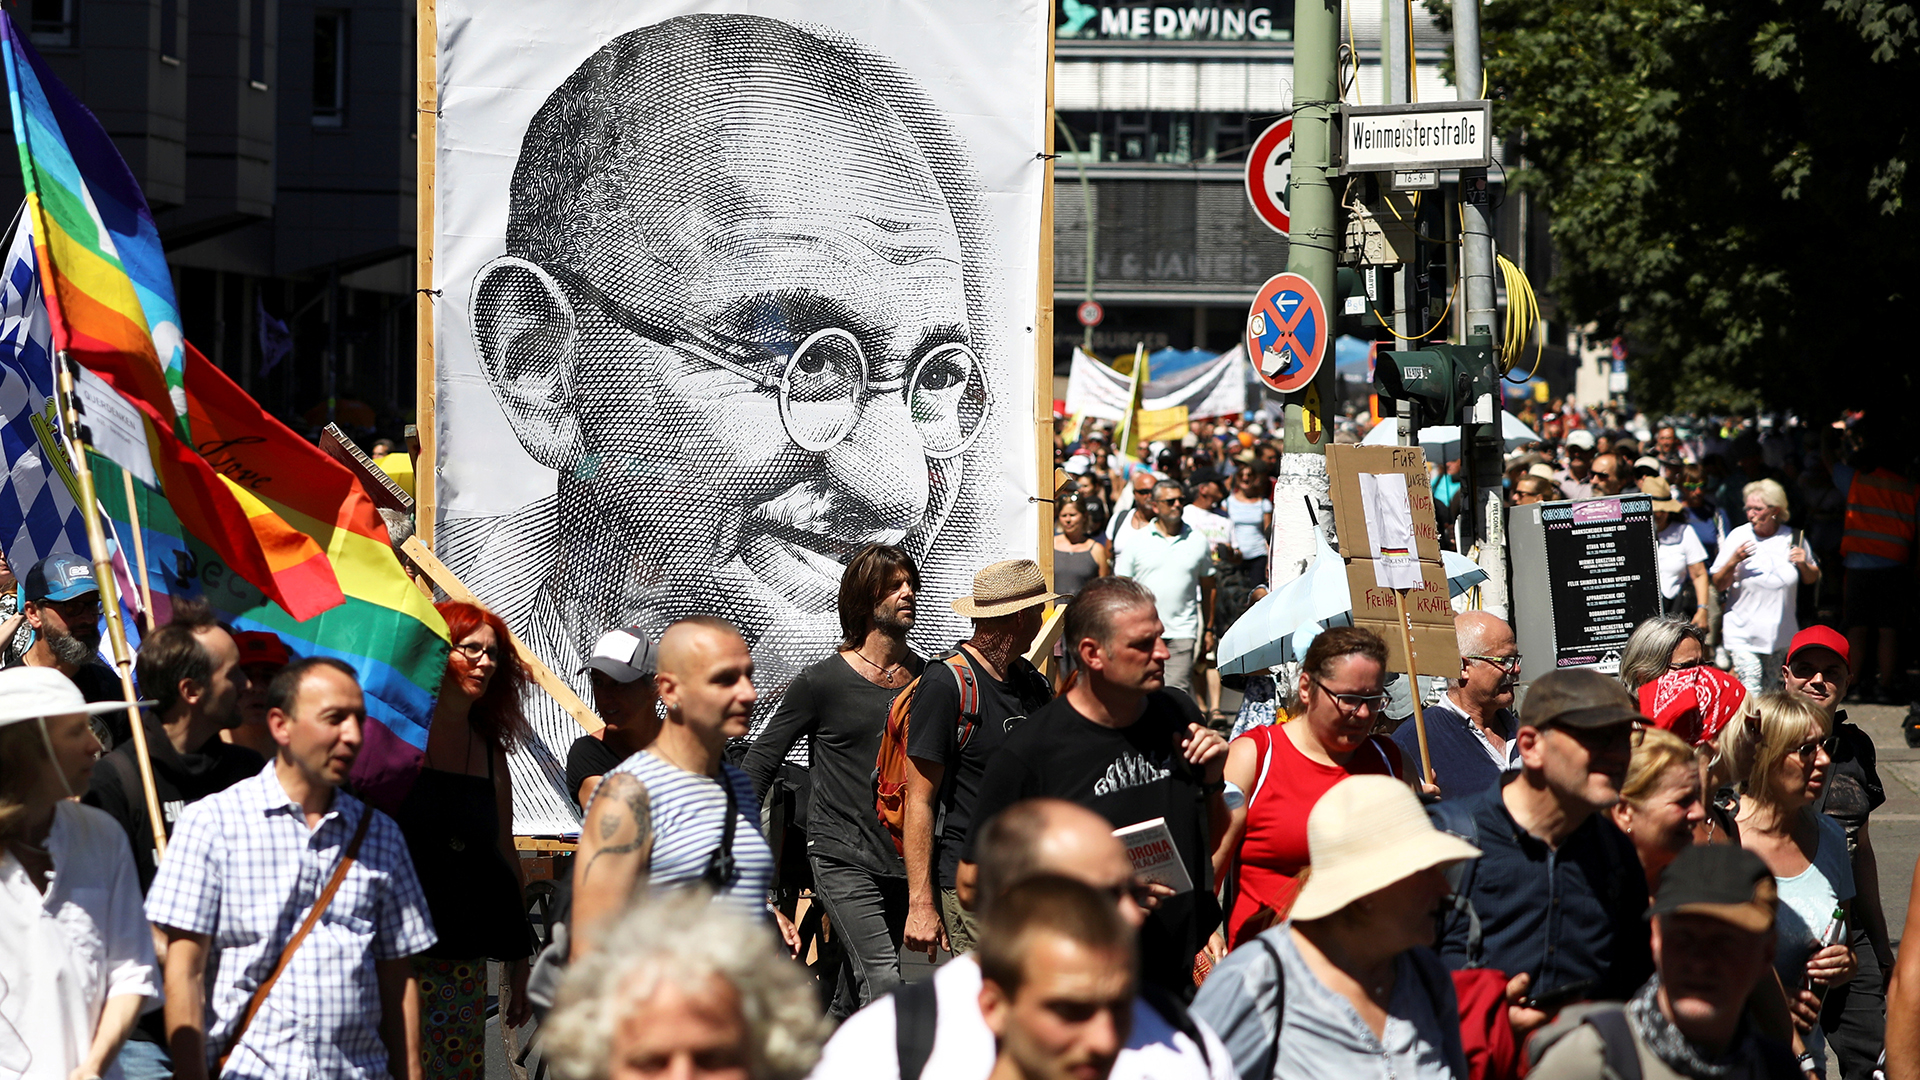 Kundgebung in Berlin gegen die Corona-Beschränkungen | REUTERS